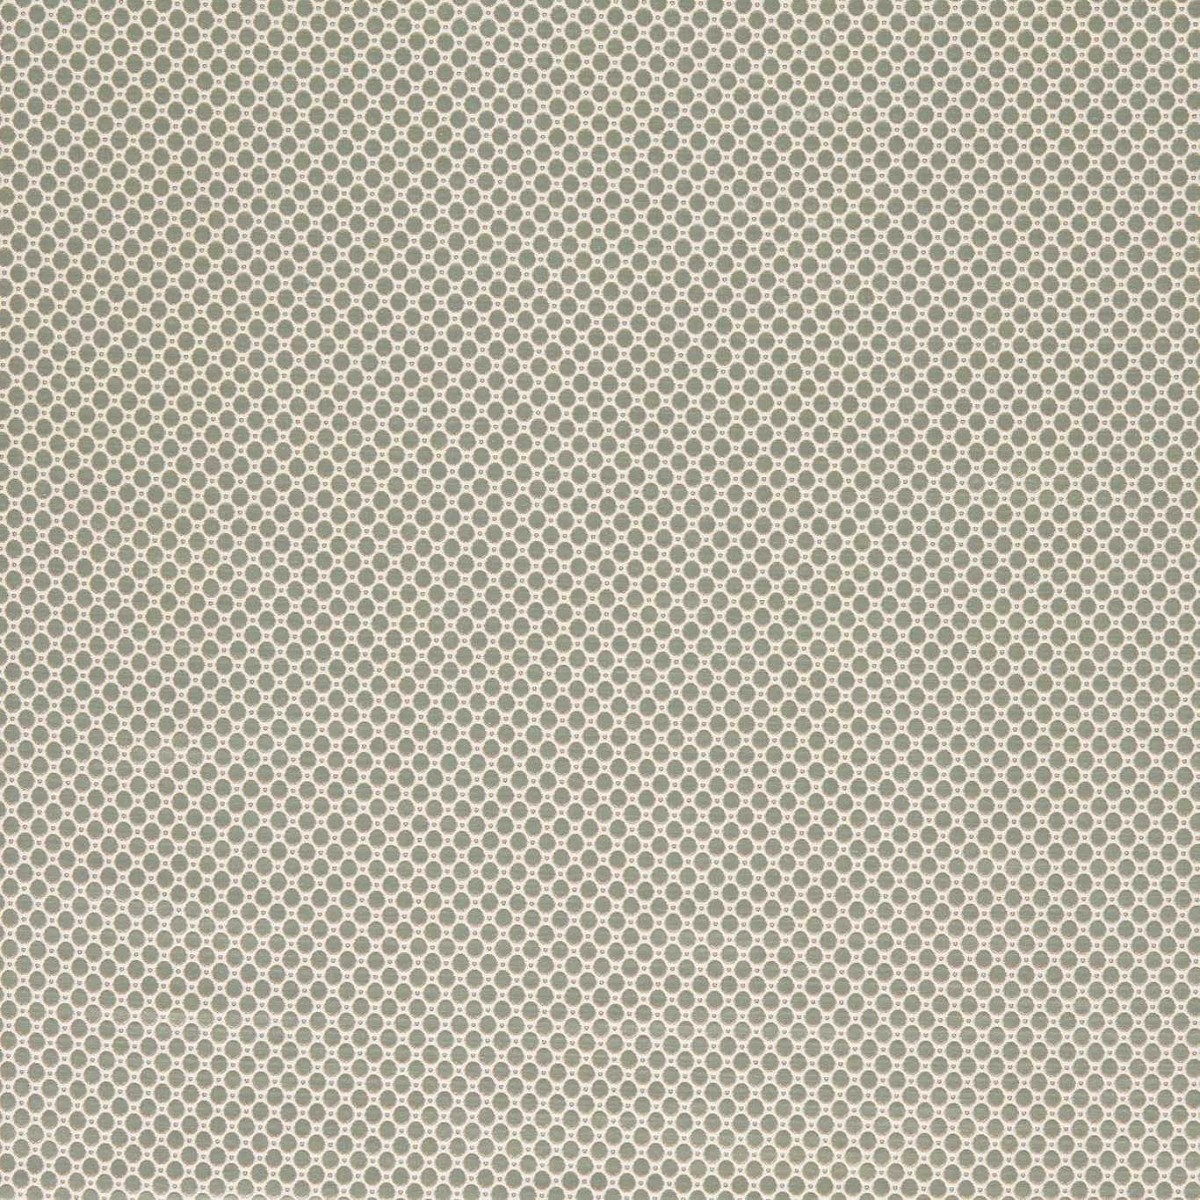 Domino Spot Flint Grey Fabric by Zoffany